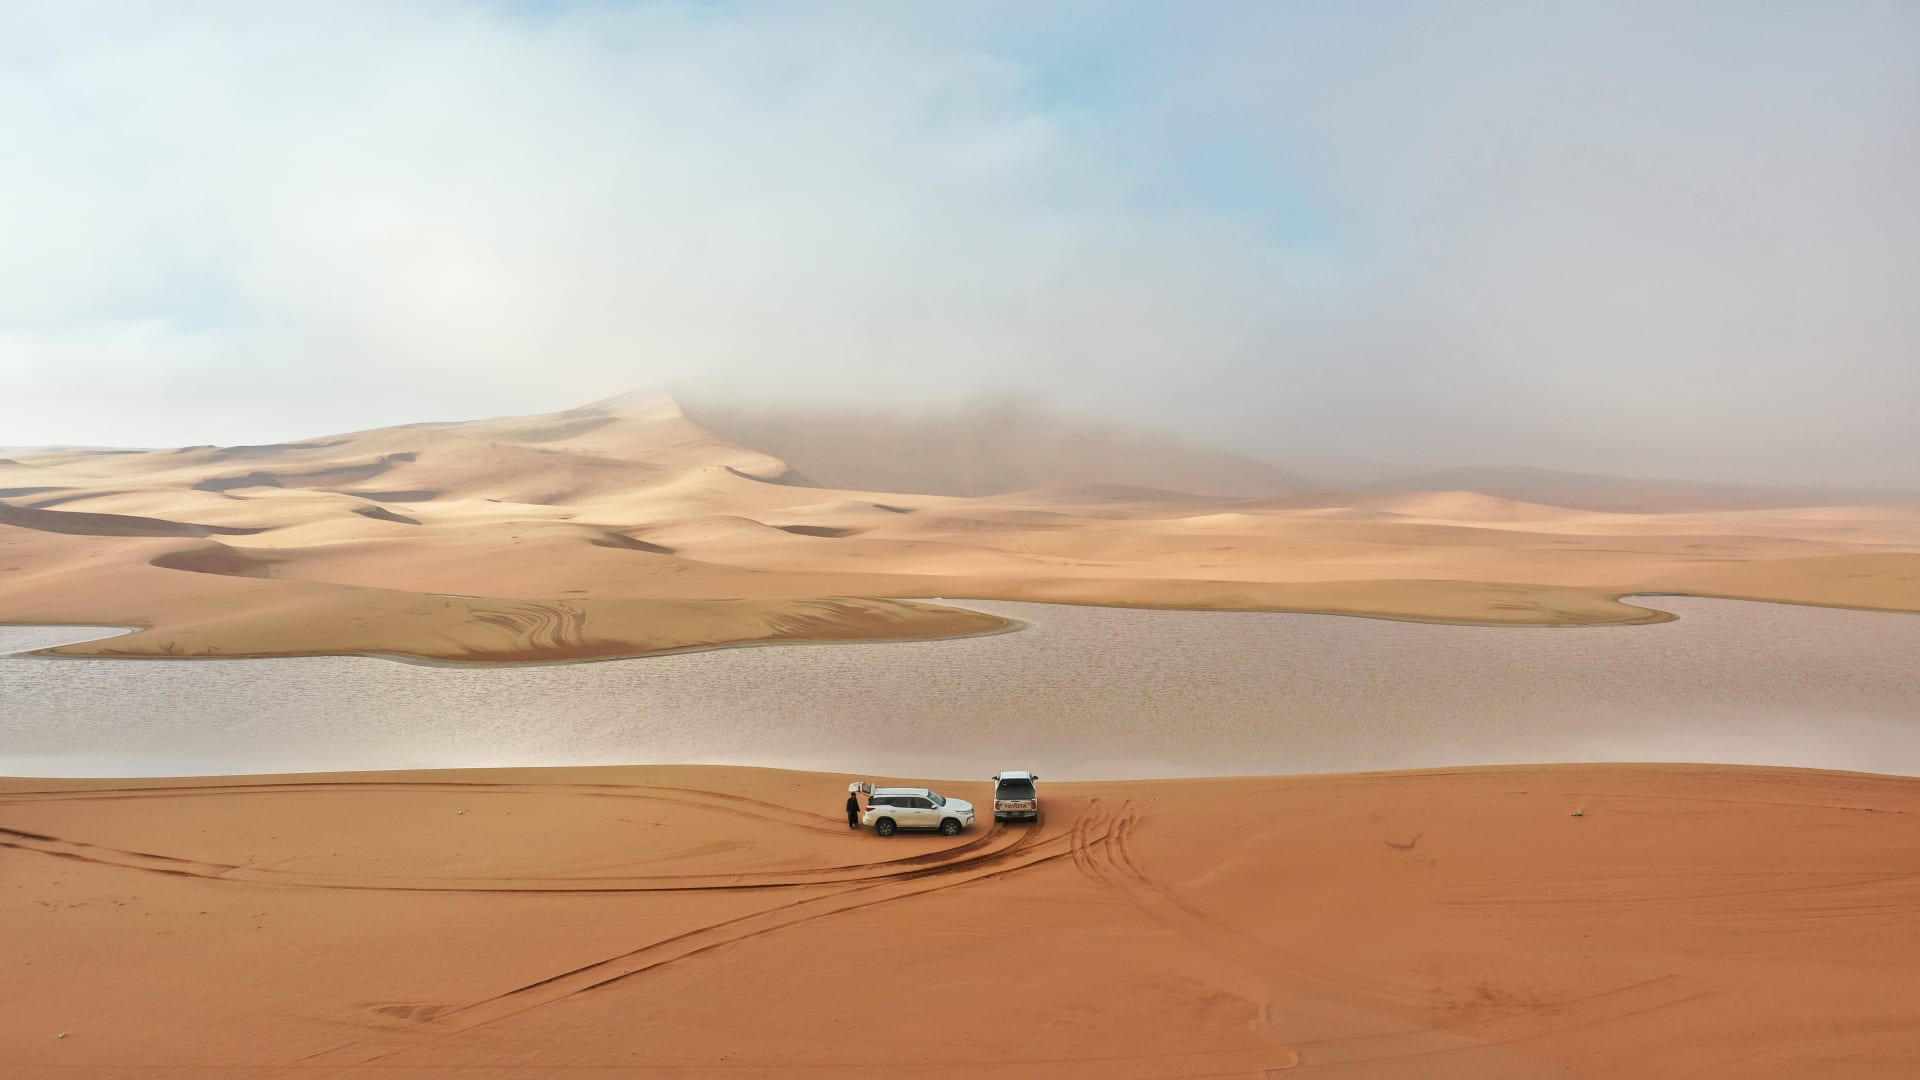 بعد الأمطار الغزيرة بالسعودية.. مصور يوثق مشهدًا ساحرًا لبحيرات في قلب الصحراء 